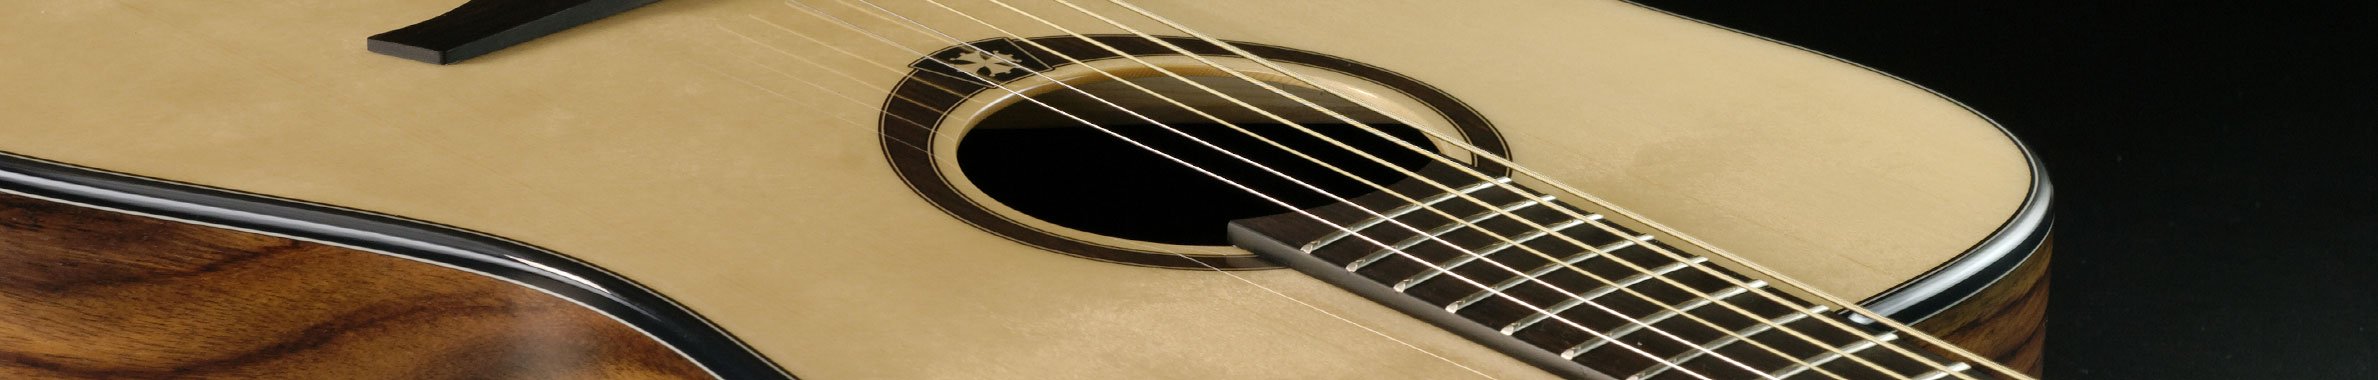 Guide de la guitare folk : choix parfaits pour les débutants aux